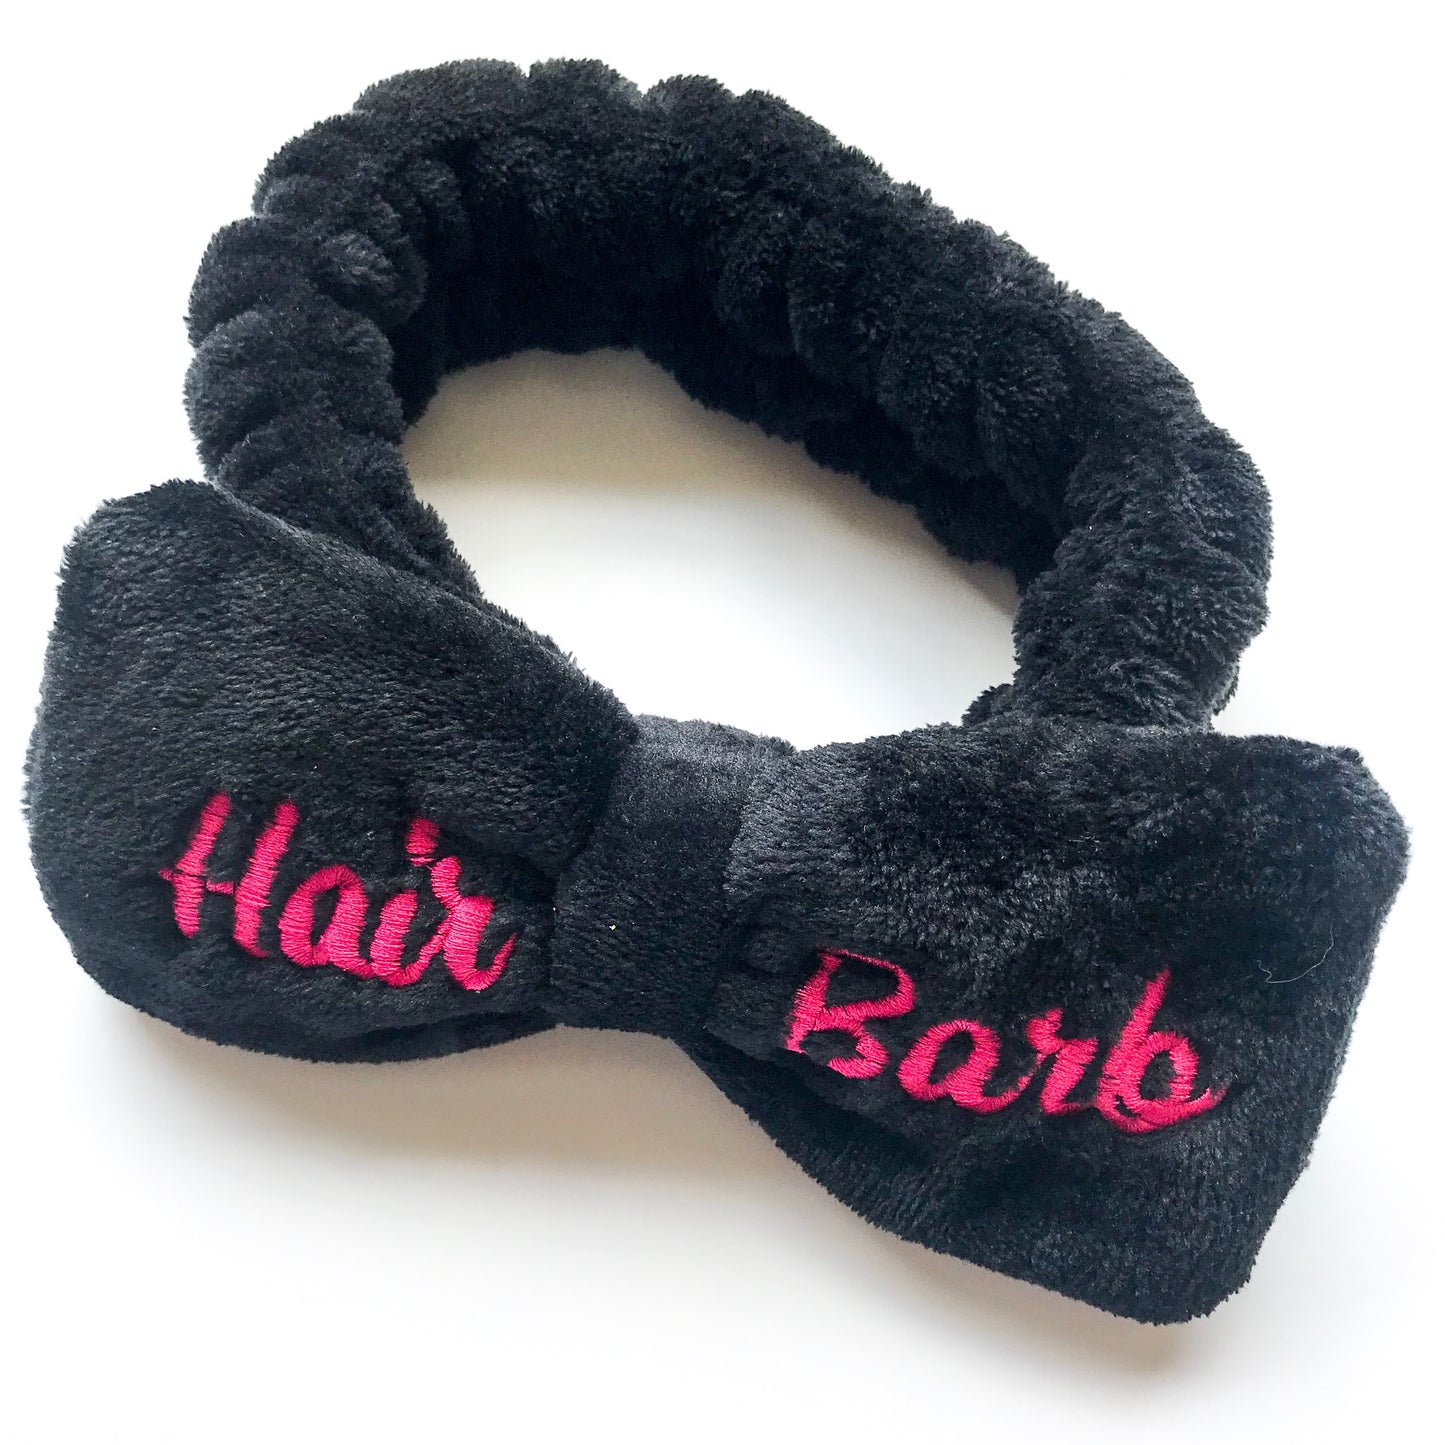 Hair Barb Bow Headband